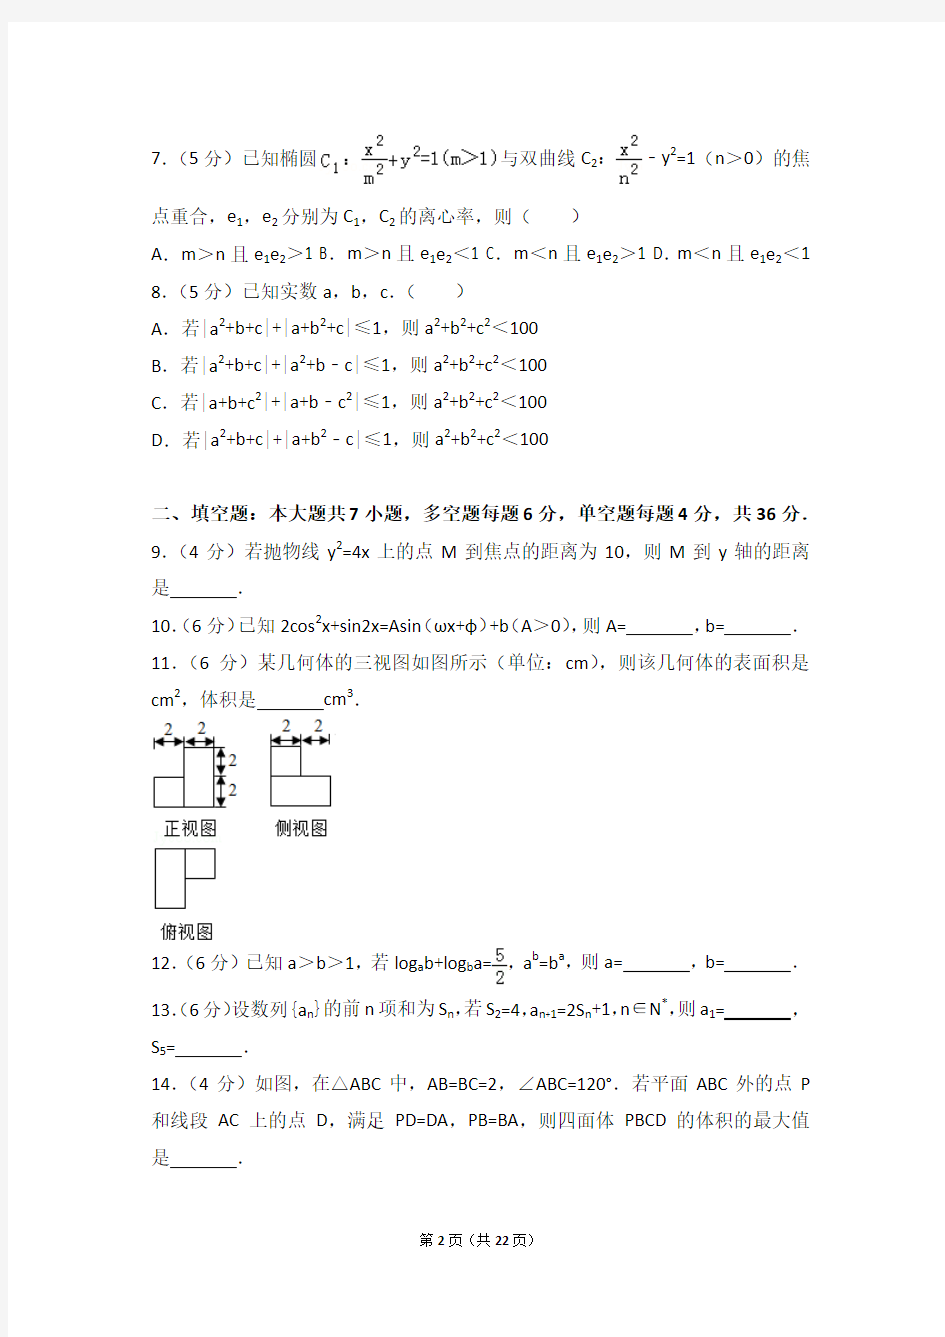 2016年浙江省高考数学试卷(理科)(含详细答案解析)